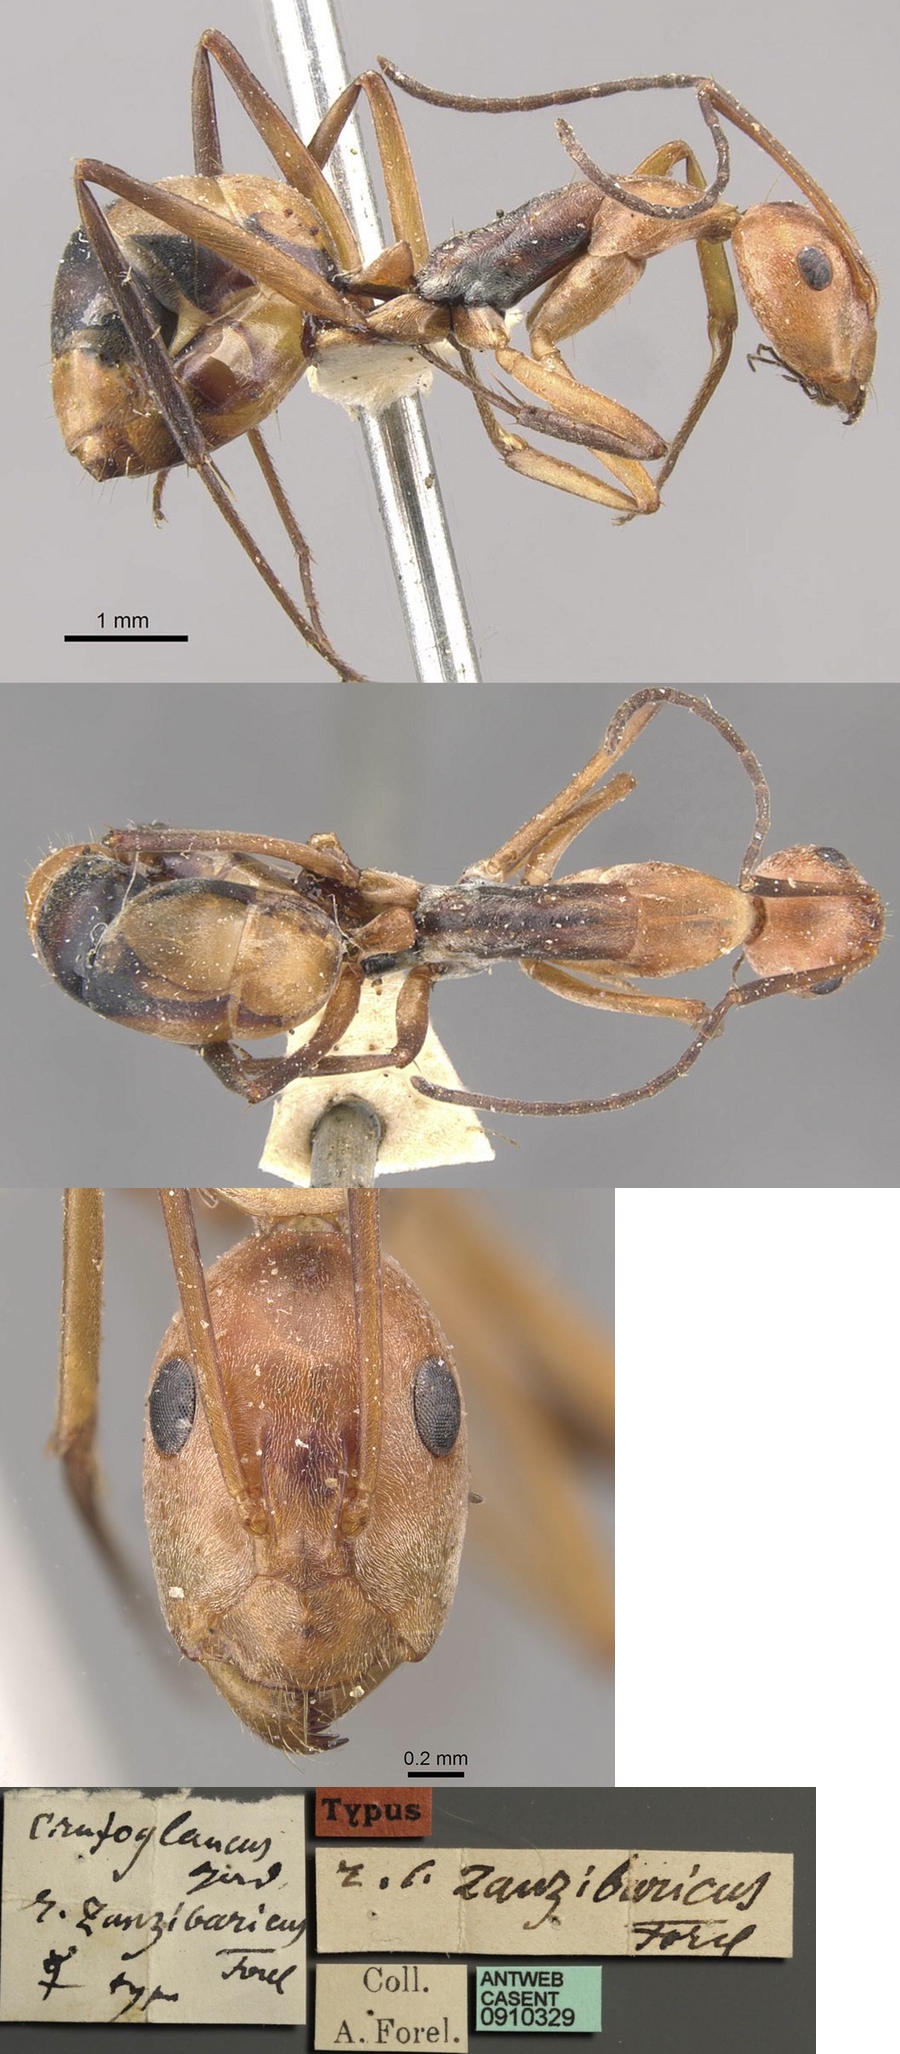 Camponotus zanzibarius minor